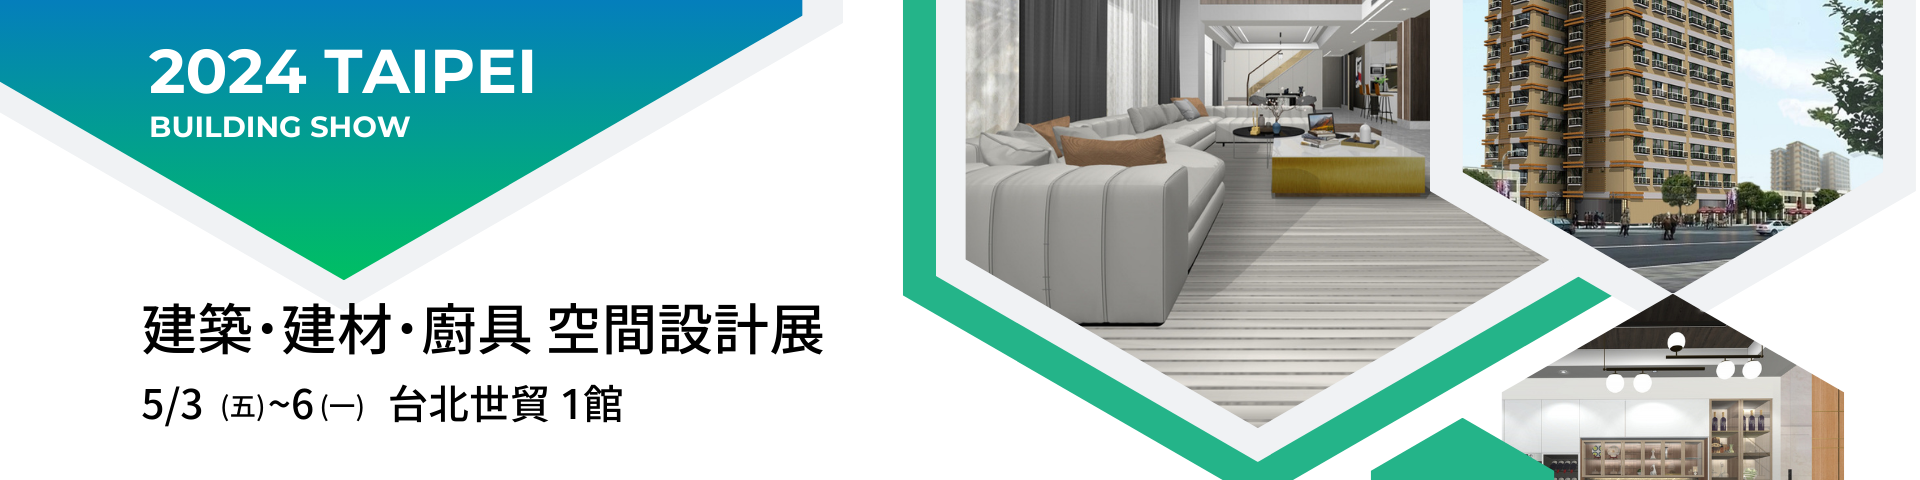 這是關於2024年在台北市舉辦的建築、建材和廚具空間設計展的資訊。展覽將展示最新的建築技術、創新建材和優質廚具。入場免費，展期為5月3日至5月6日，地點在台北市貿易1館